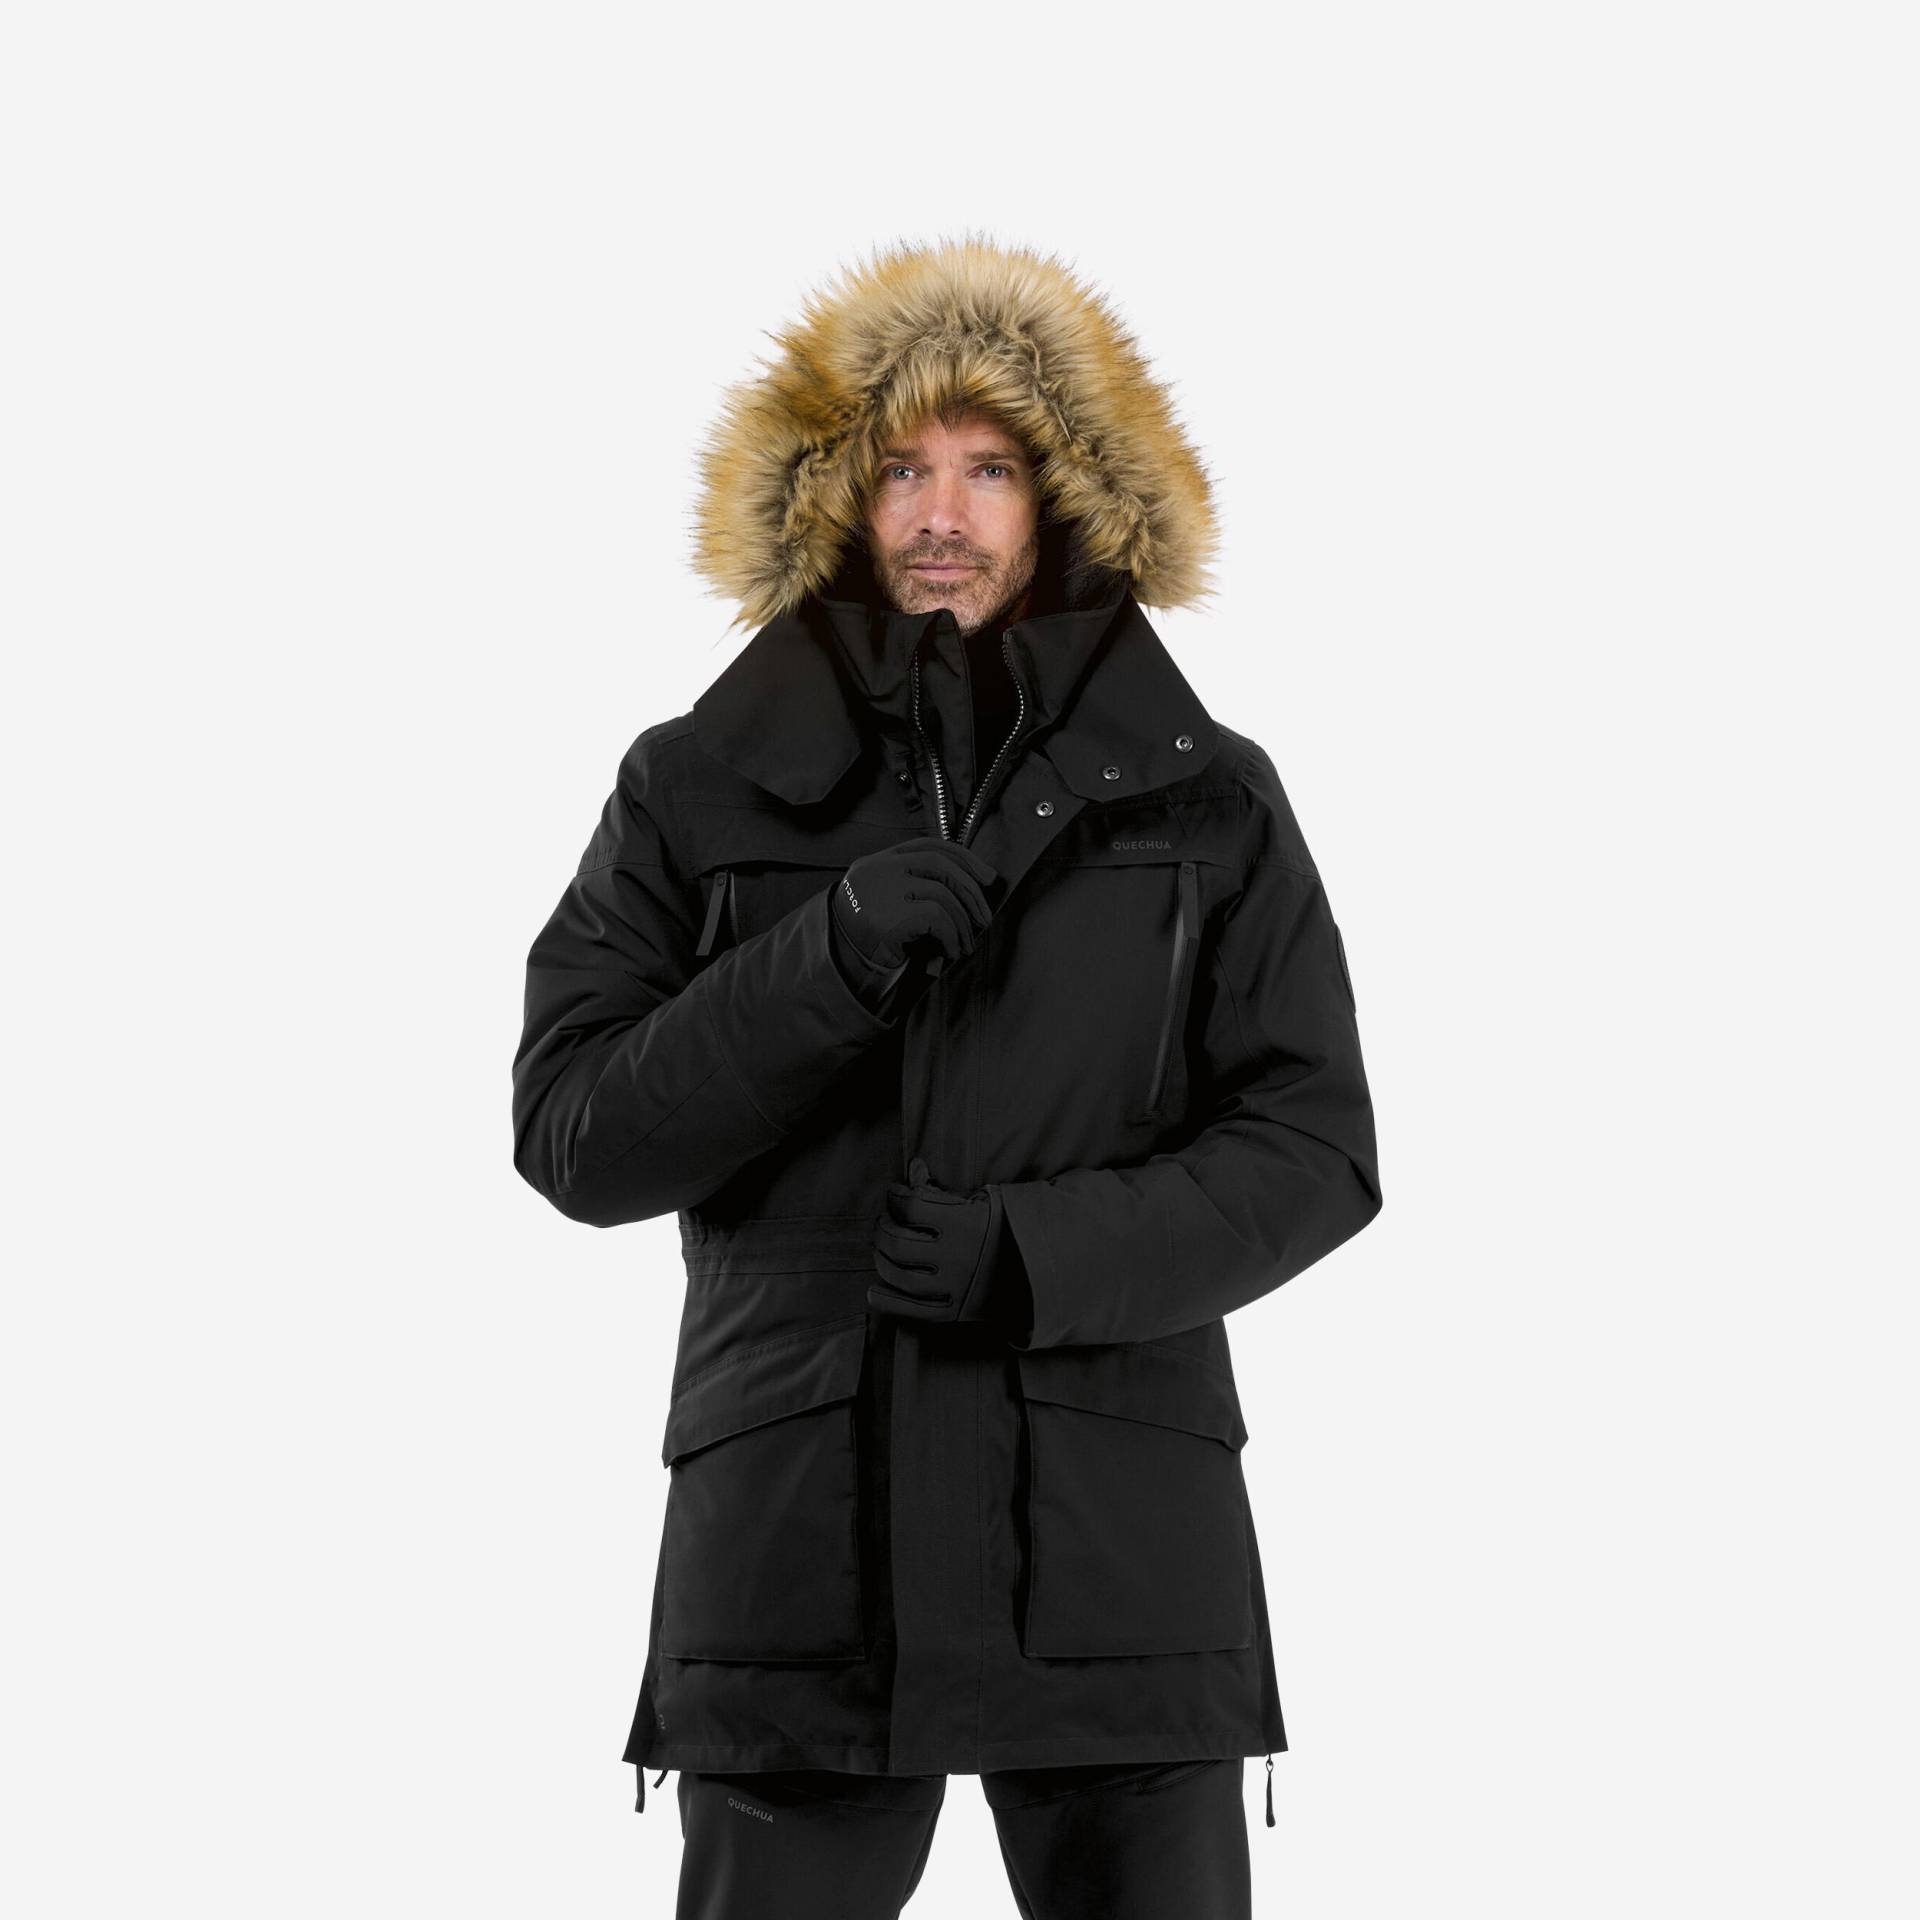 Winterjacke Parka Herren warm bis -20°C wasserdicht - SH900 schwarz von QUECHUA